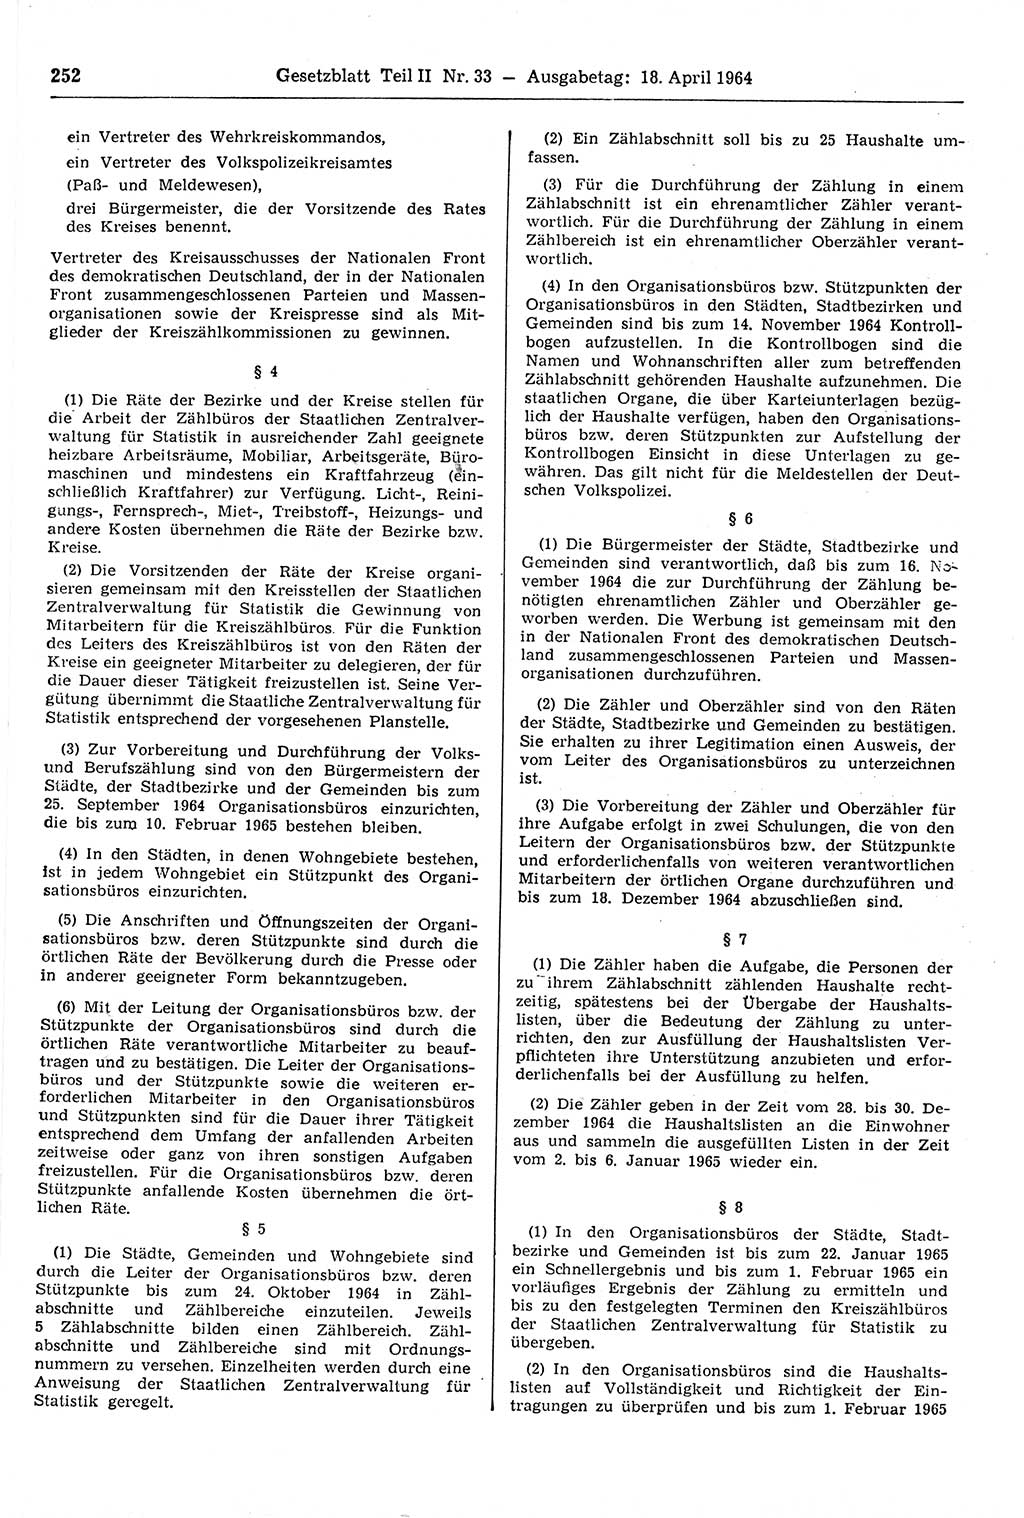 Gesetzblatt (GBl.) der Deutschen Demokratischen Republik (DDR) Teil ⅠⅠ 1964, Seite 252 (GBl. DDR ⅠⅠ 1964, S. 252)